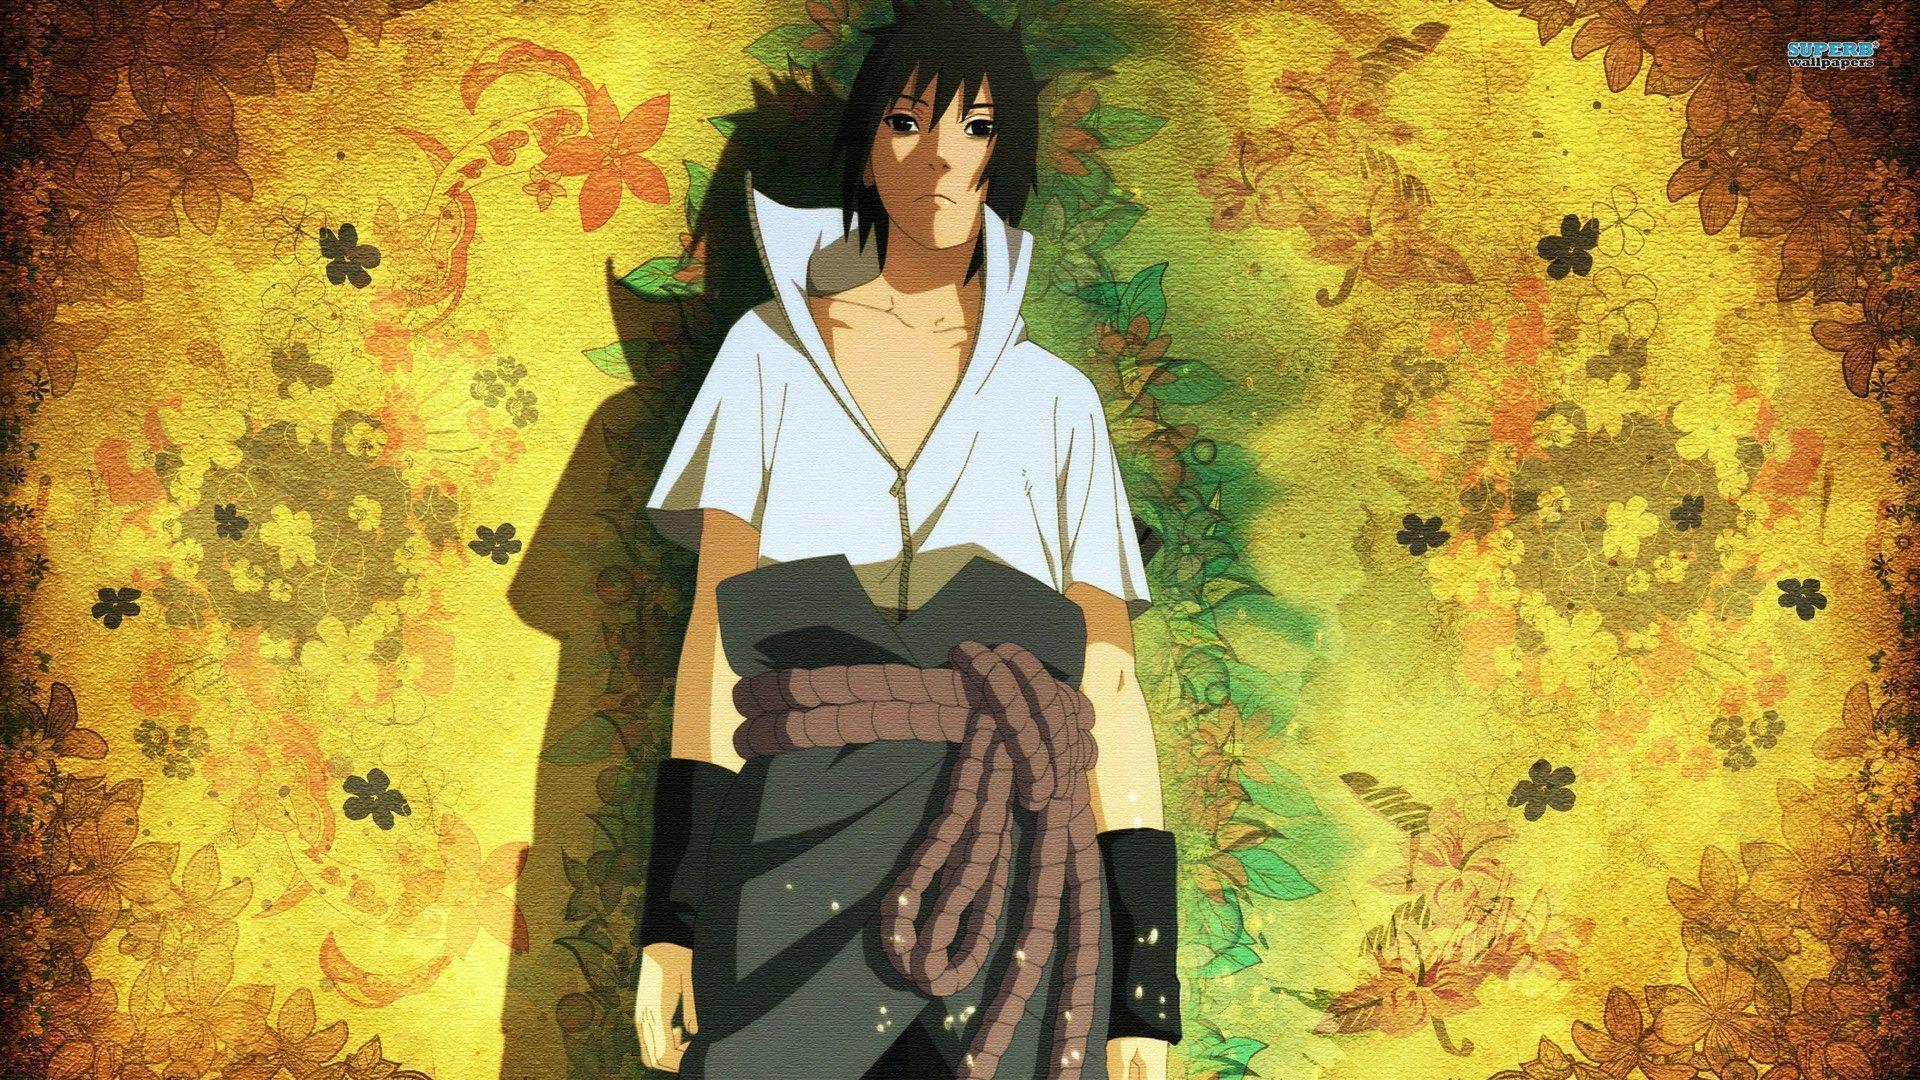 Sasuke uchiha naruto 1080p pics. Daily pics update. HD